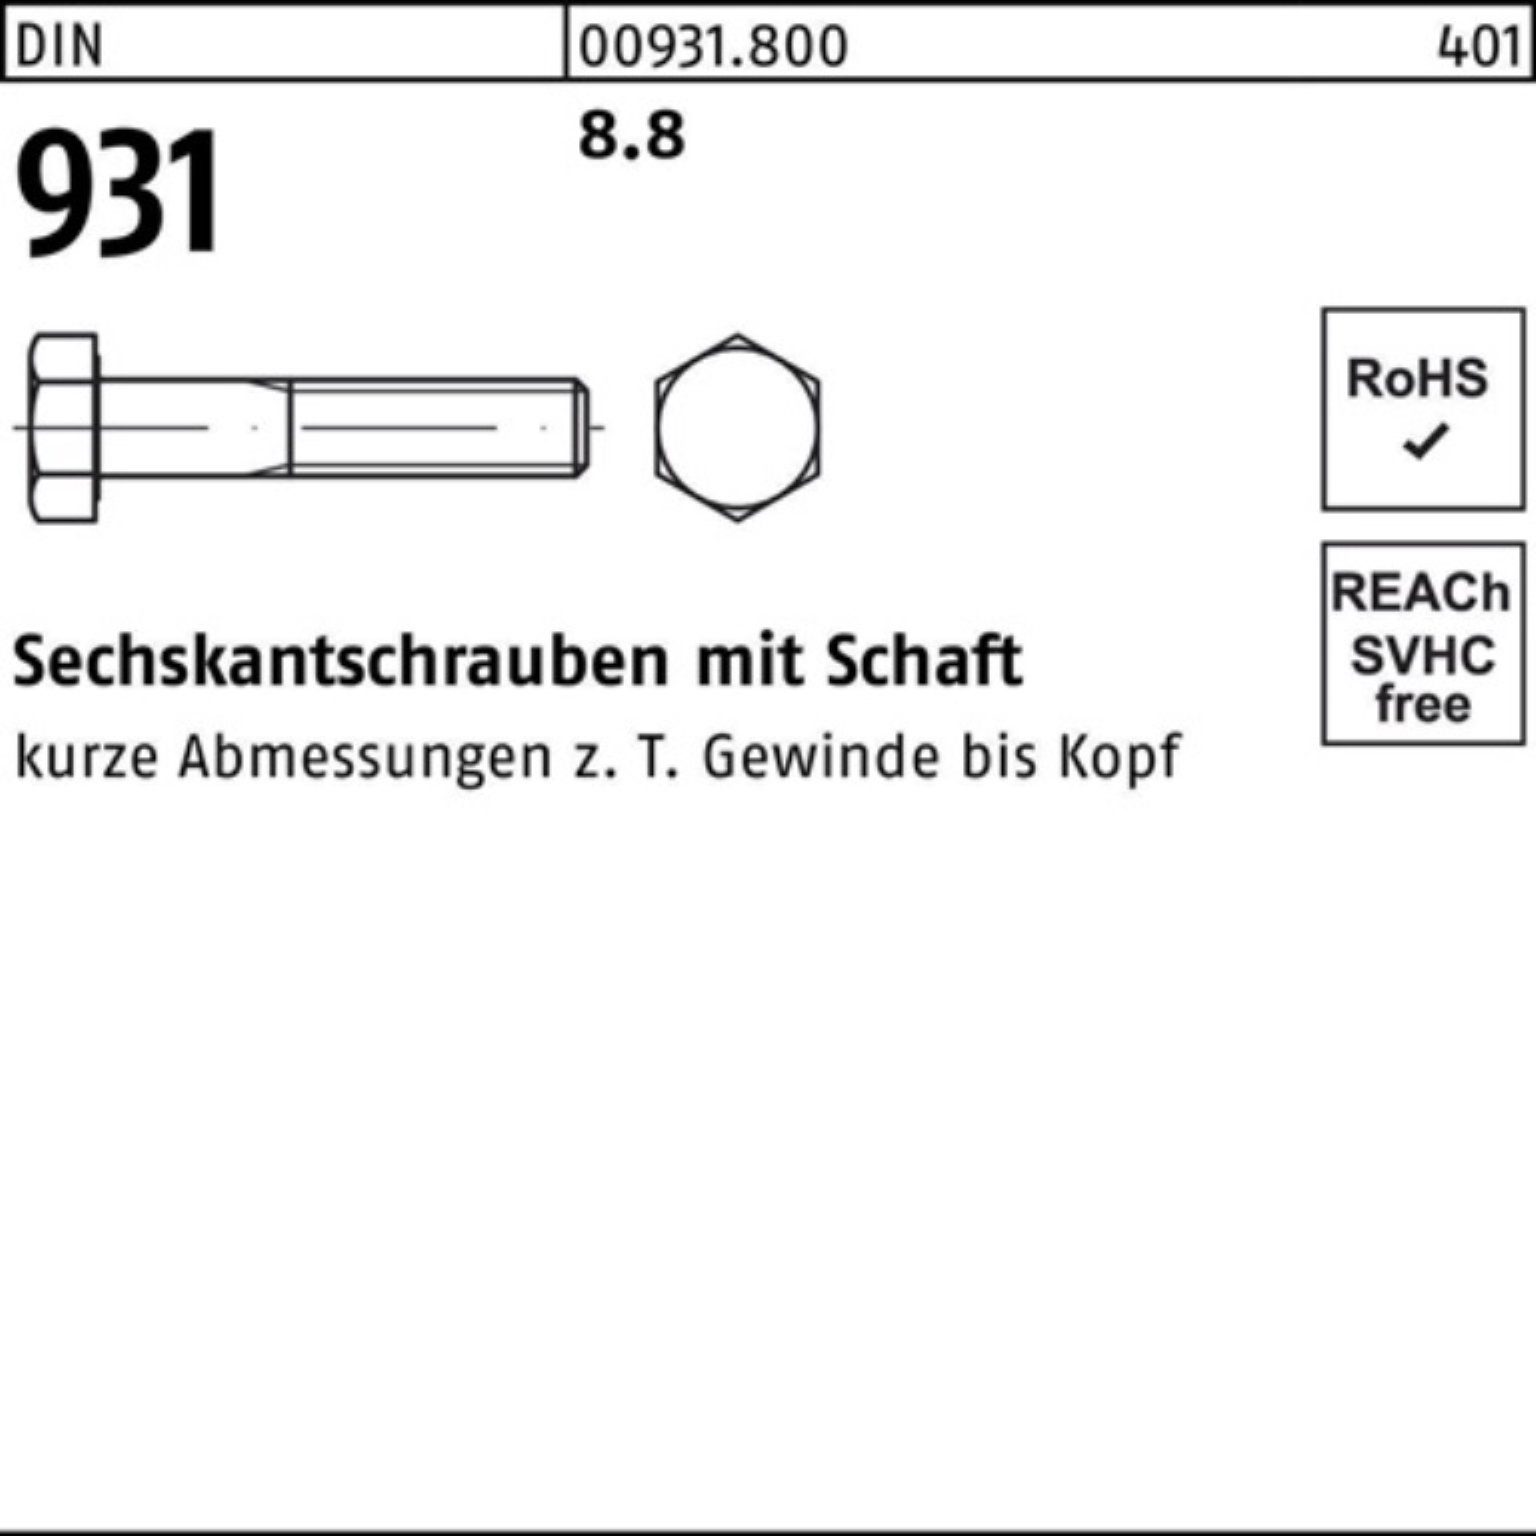 Stück DIN Sechskantschraube Reyher Pack Sechskantschraube Schaft M5x 50 200er 200 8.8 931 DIN